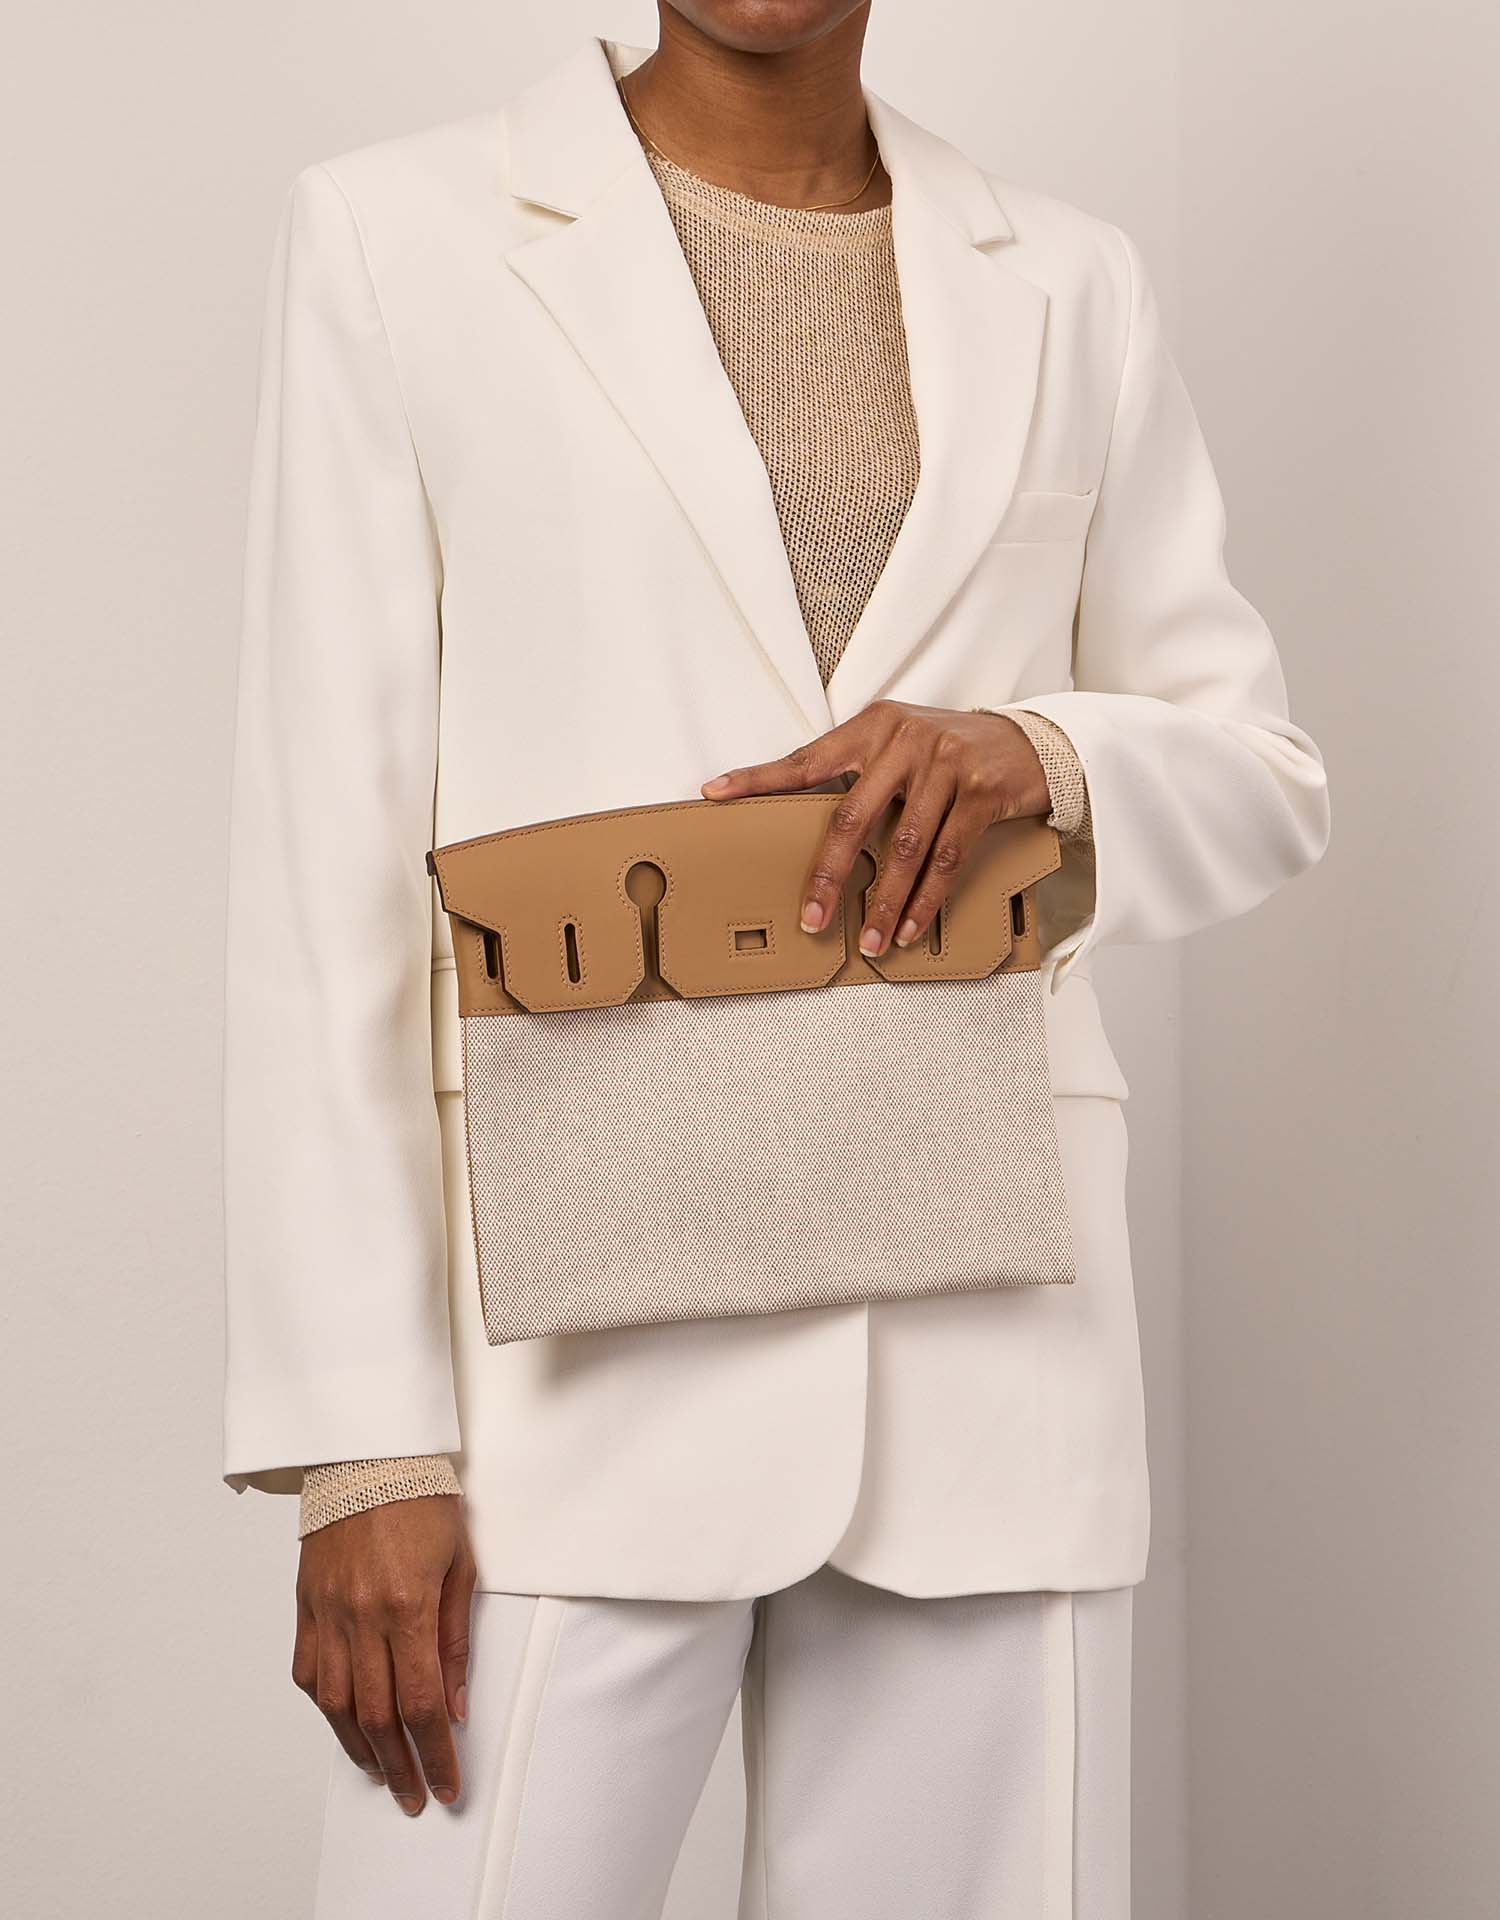 Hermès Birkin3in1 30 Bisquit-Ecru Sizes Worn| Sell your designer bag on Saclab.com